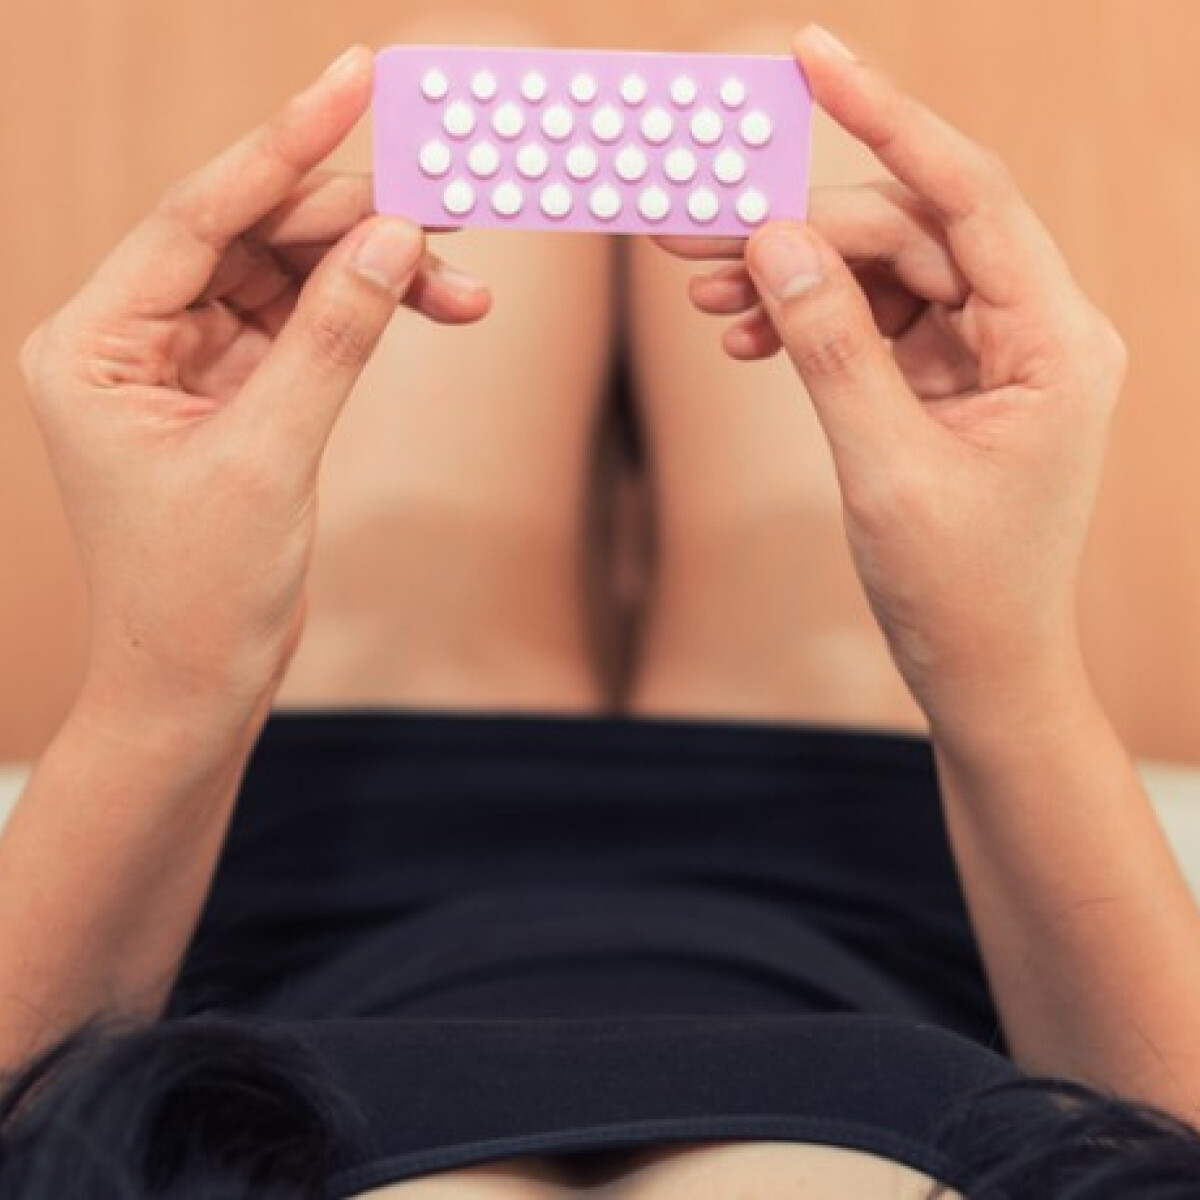 Hormonális fogamzásgátlók - vajon tényleg veszélyesek?